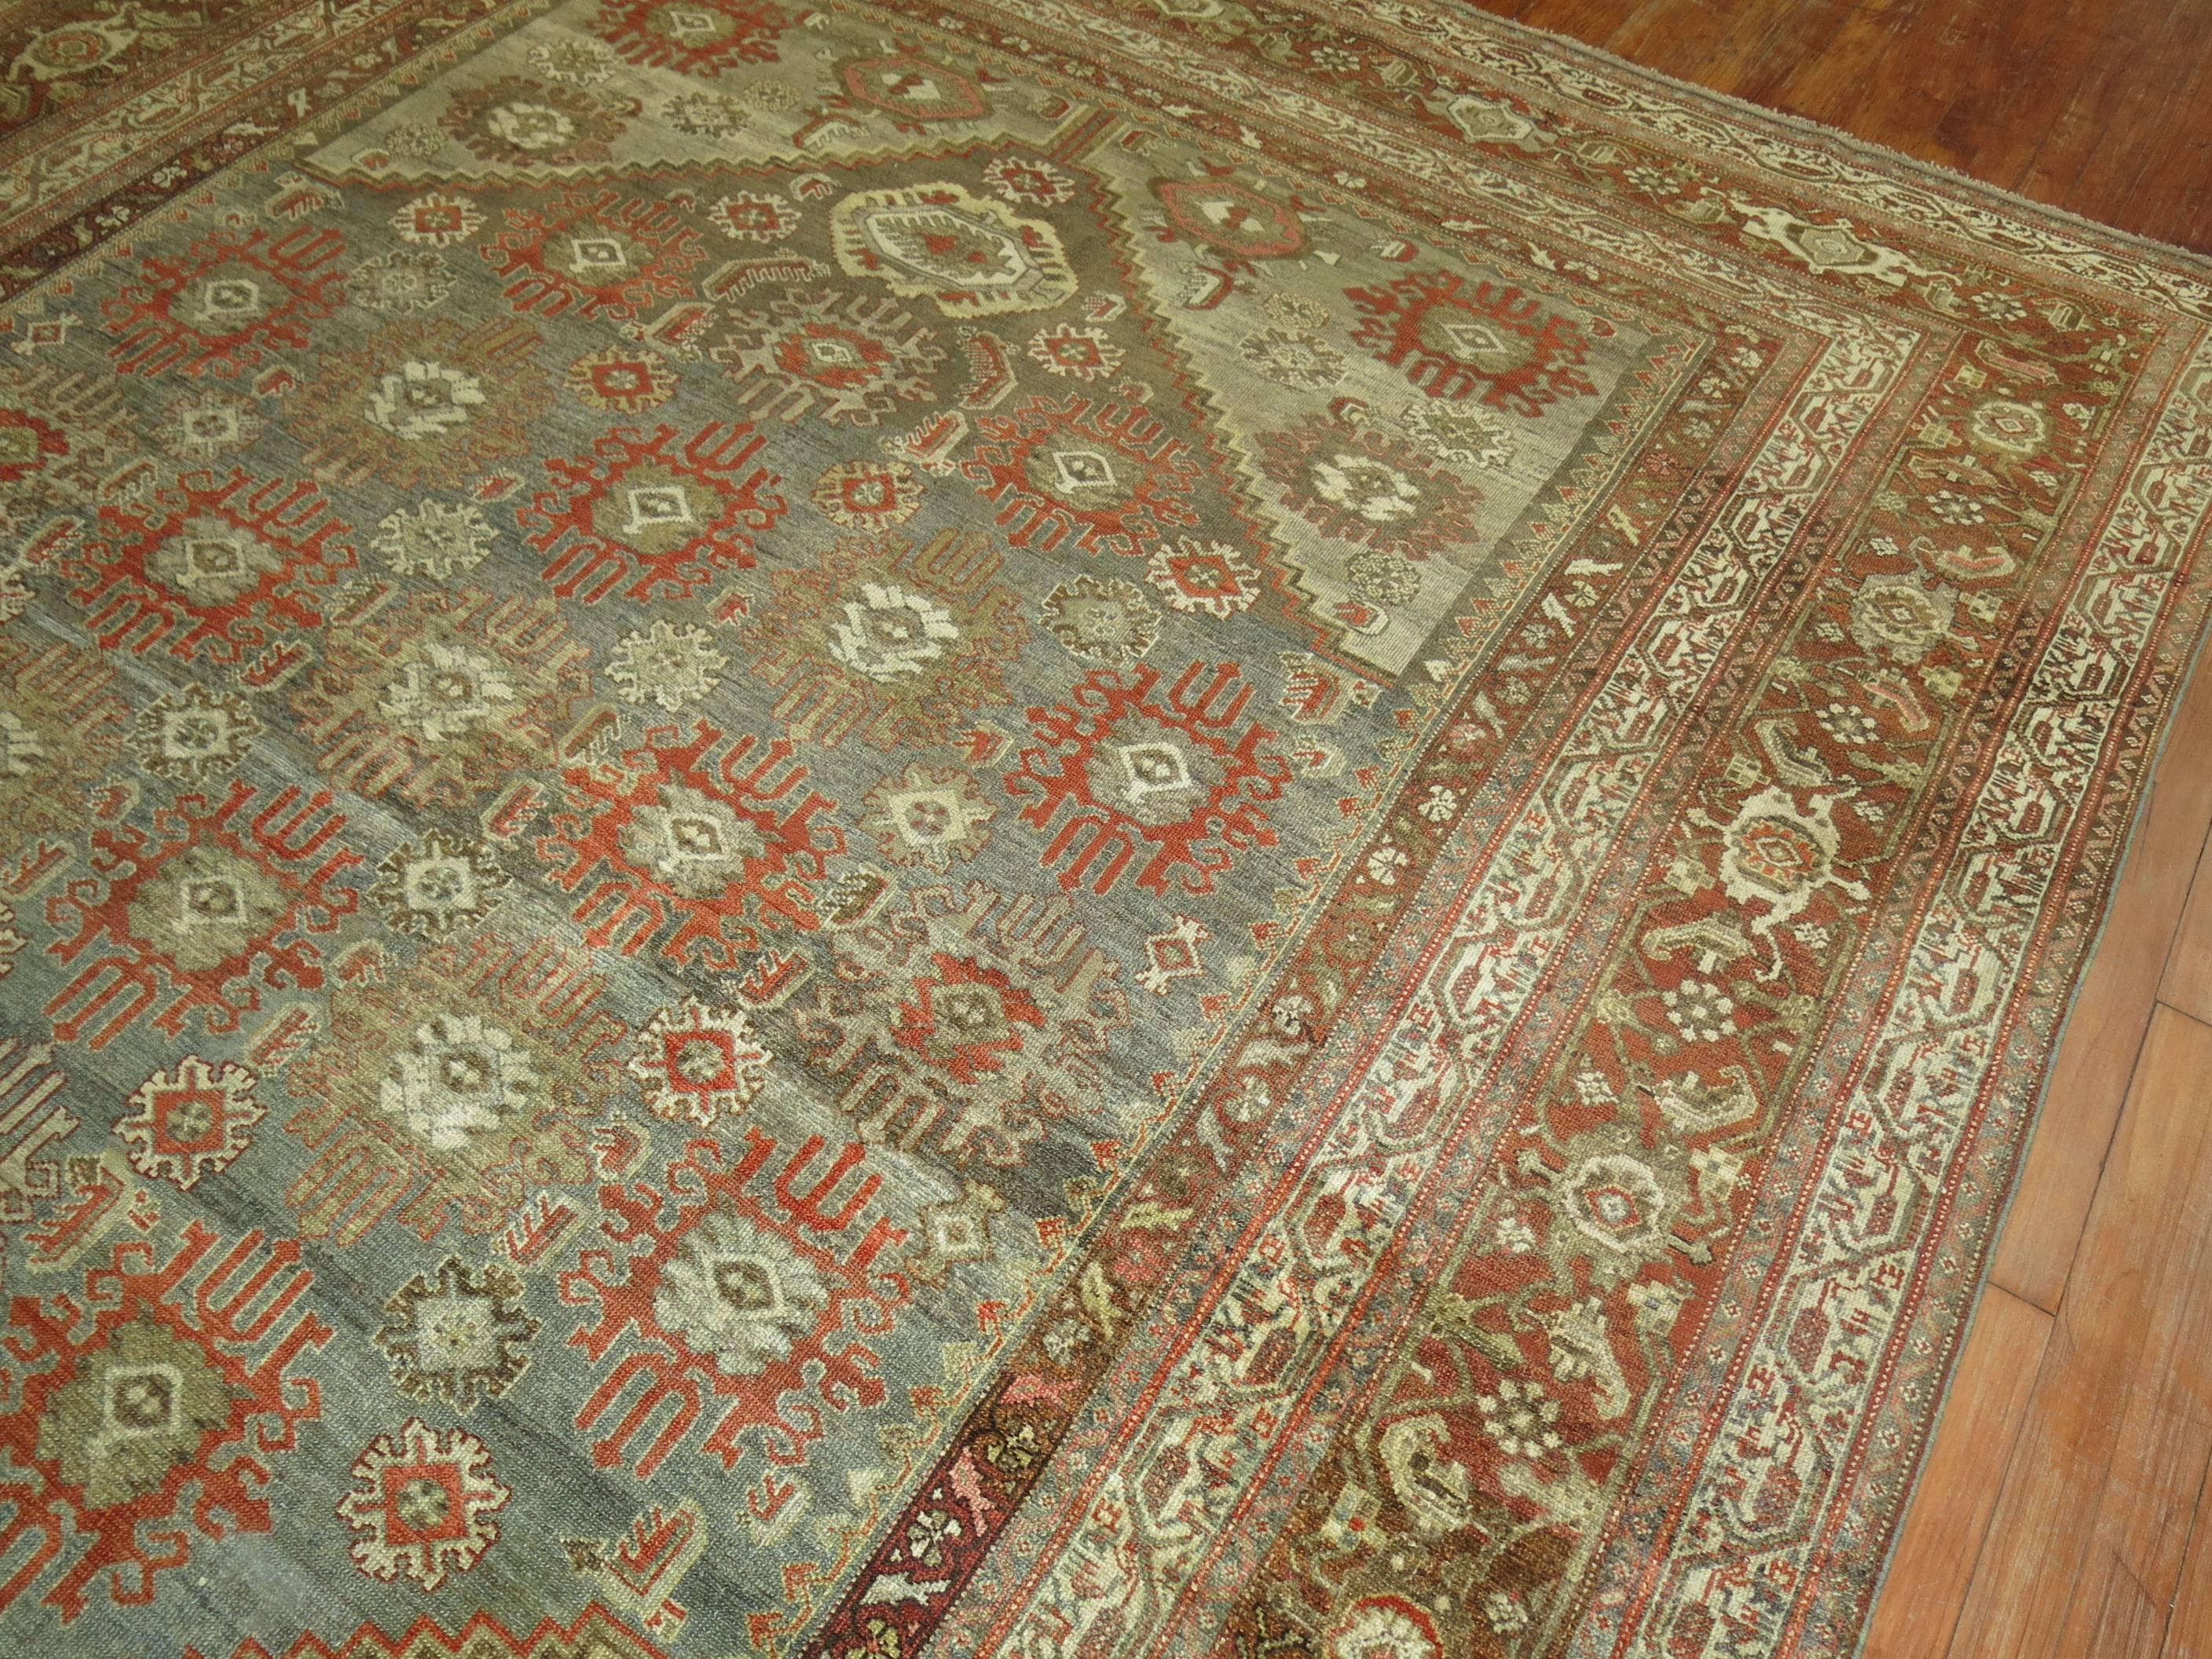 20th Century Antique Persian Malayer Decorative Carpet in  Predominant Silver Color